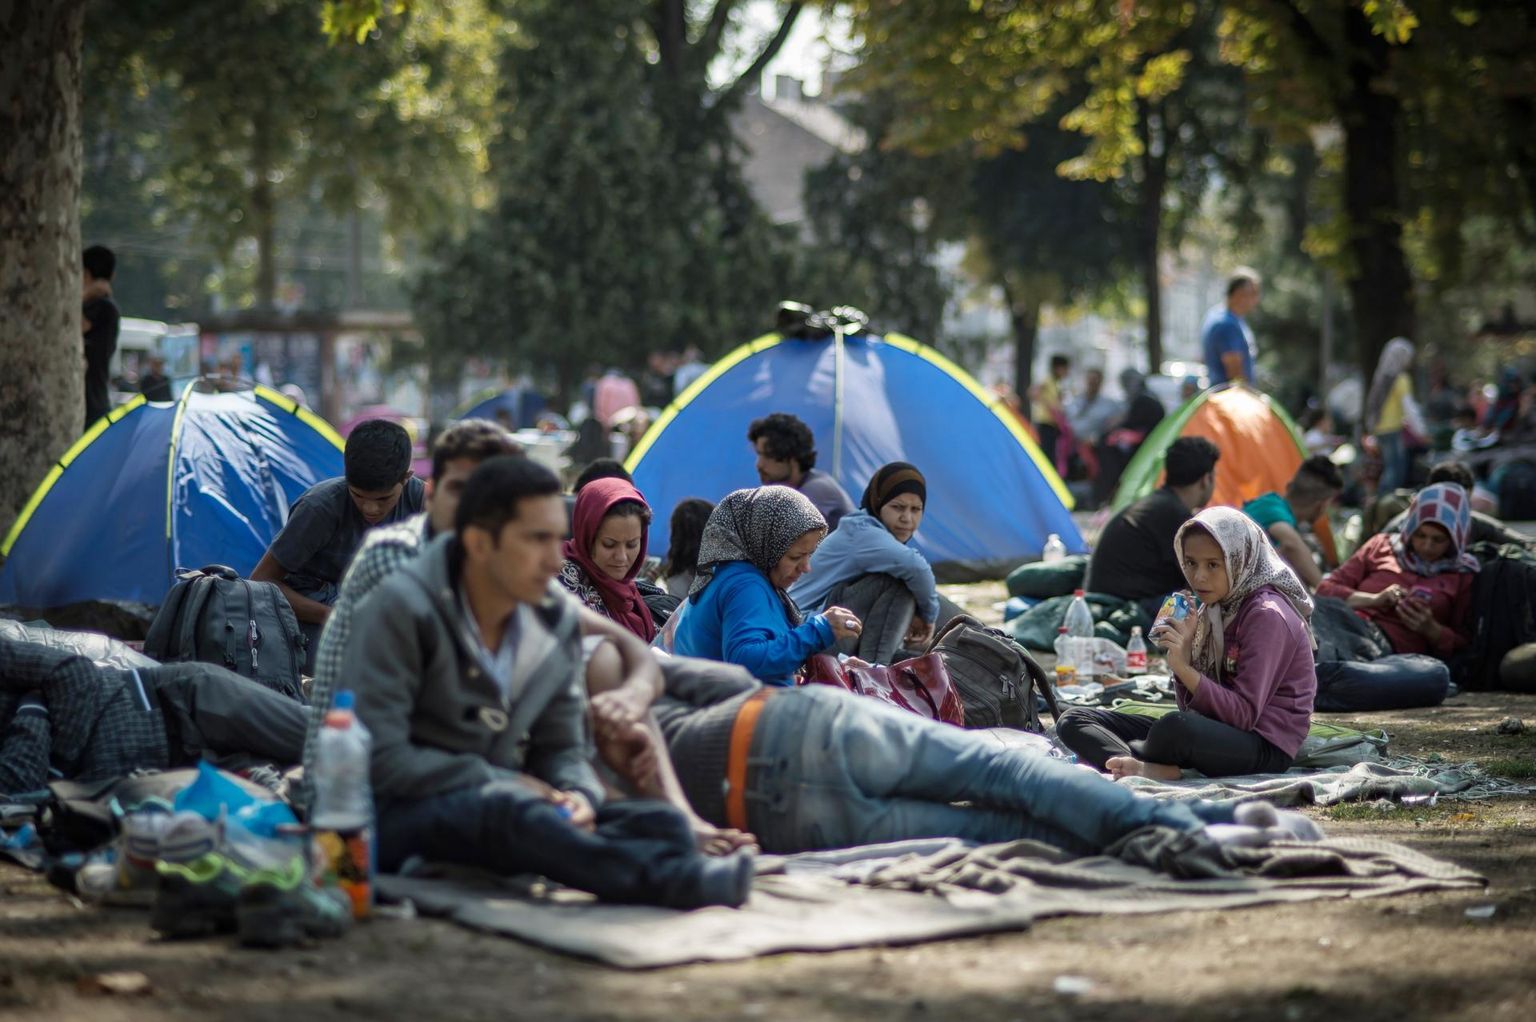 Sajad migrandid on kogunenud Serbia pealinna Belgradi parkidesse, millest on kujunenud nende smugeldajatega kohtumise paik.